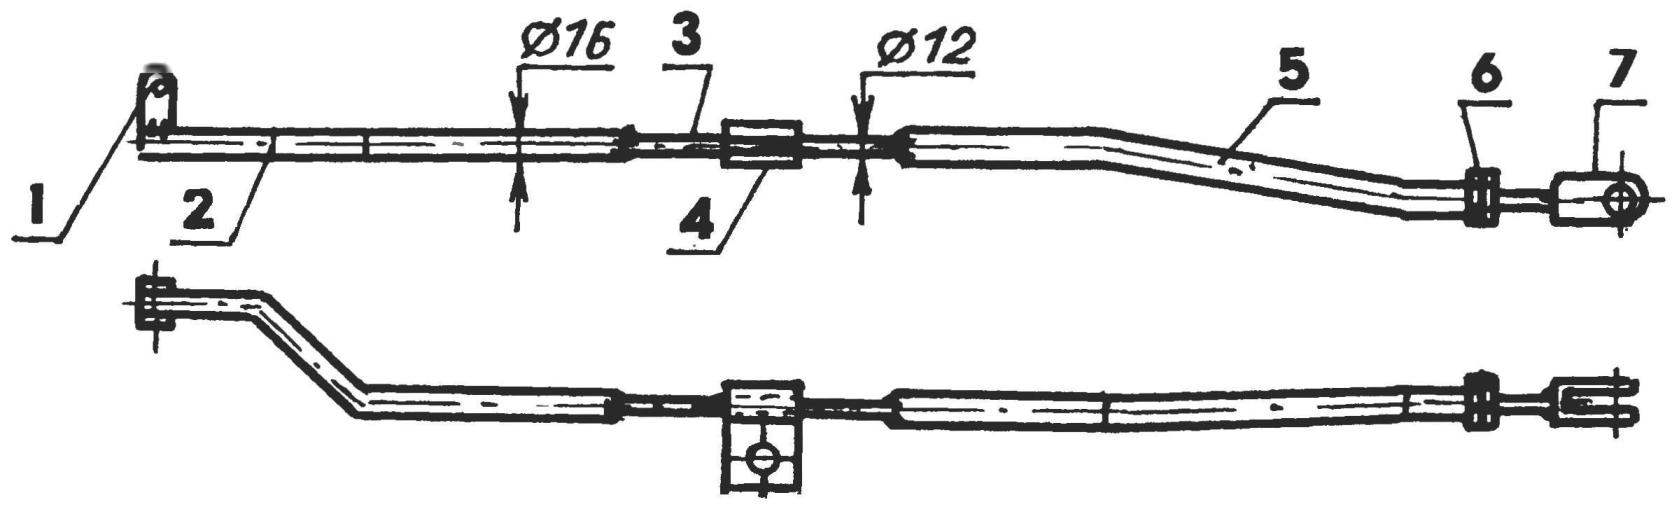 Fig. 8. Rod